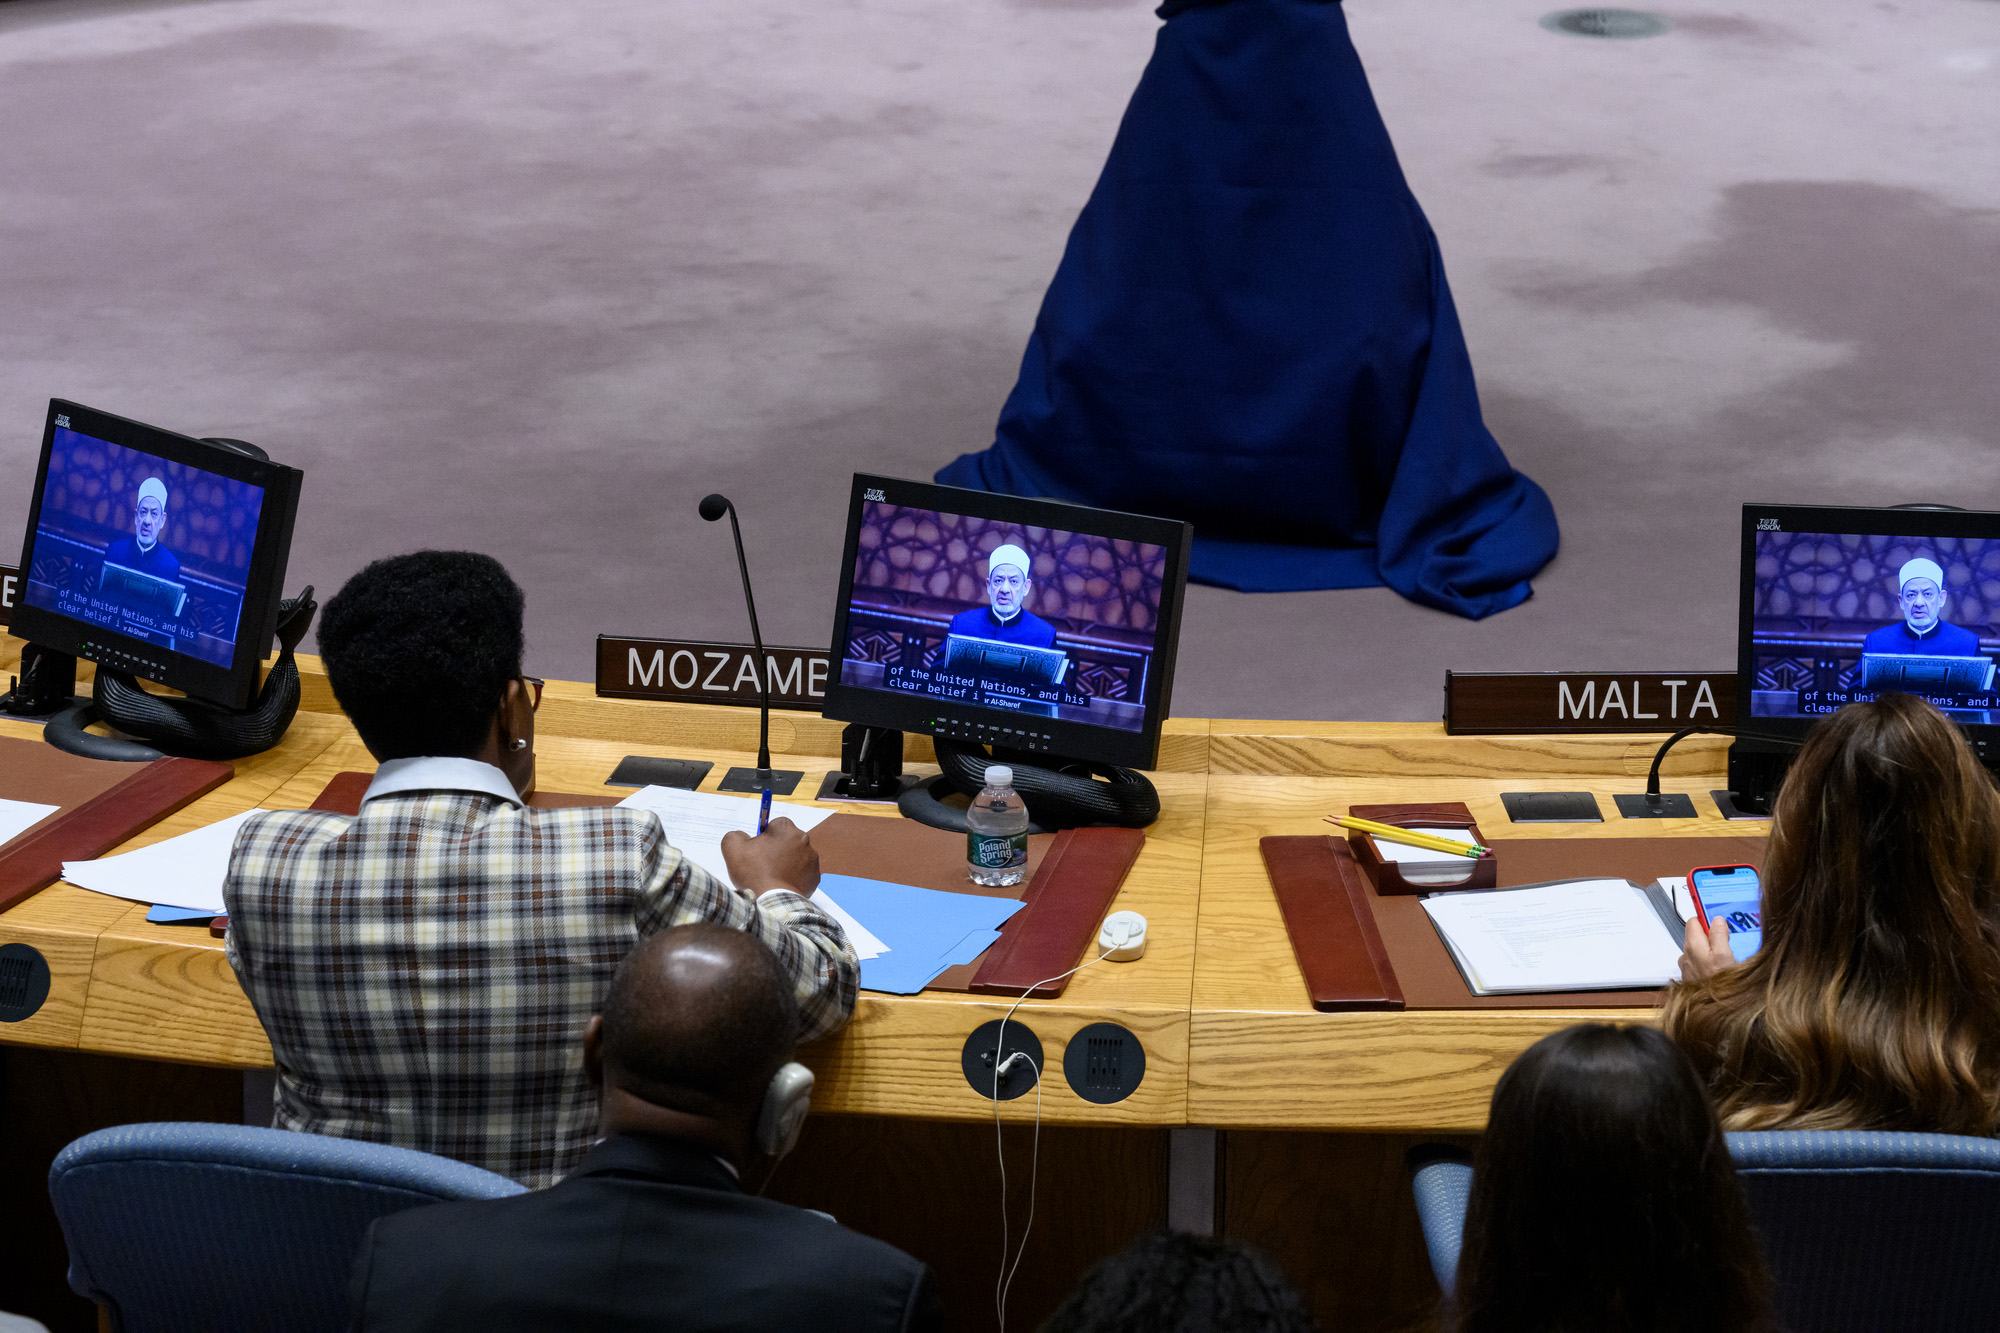 يظهر على الشاشة الإمام الأكبر أحمد الطيب، شيخ الأزهر الشريف ورئيس مجلس حكماء المسلمين وهو يتحدث أمام مجلس الأمن عن أهمية الدعوة إلى نشر السلام والمحبة بين الشعوب